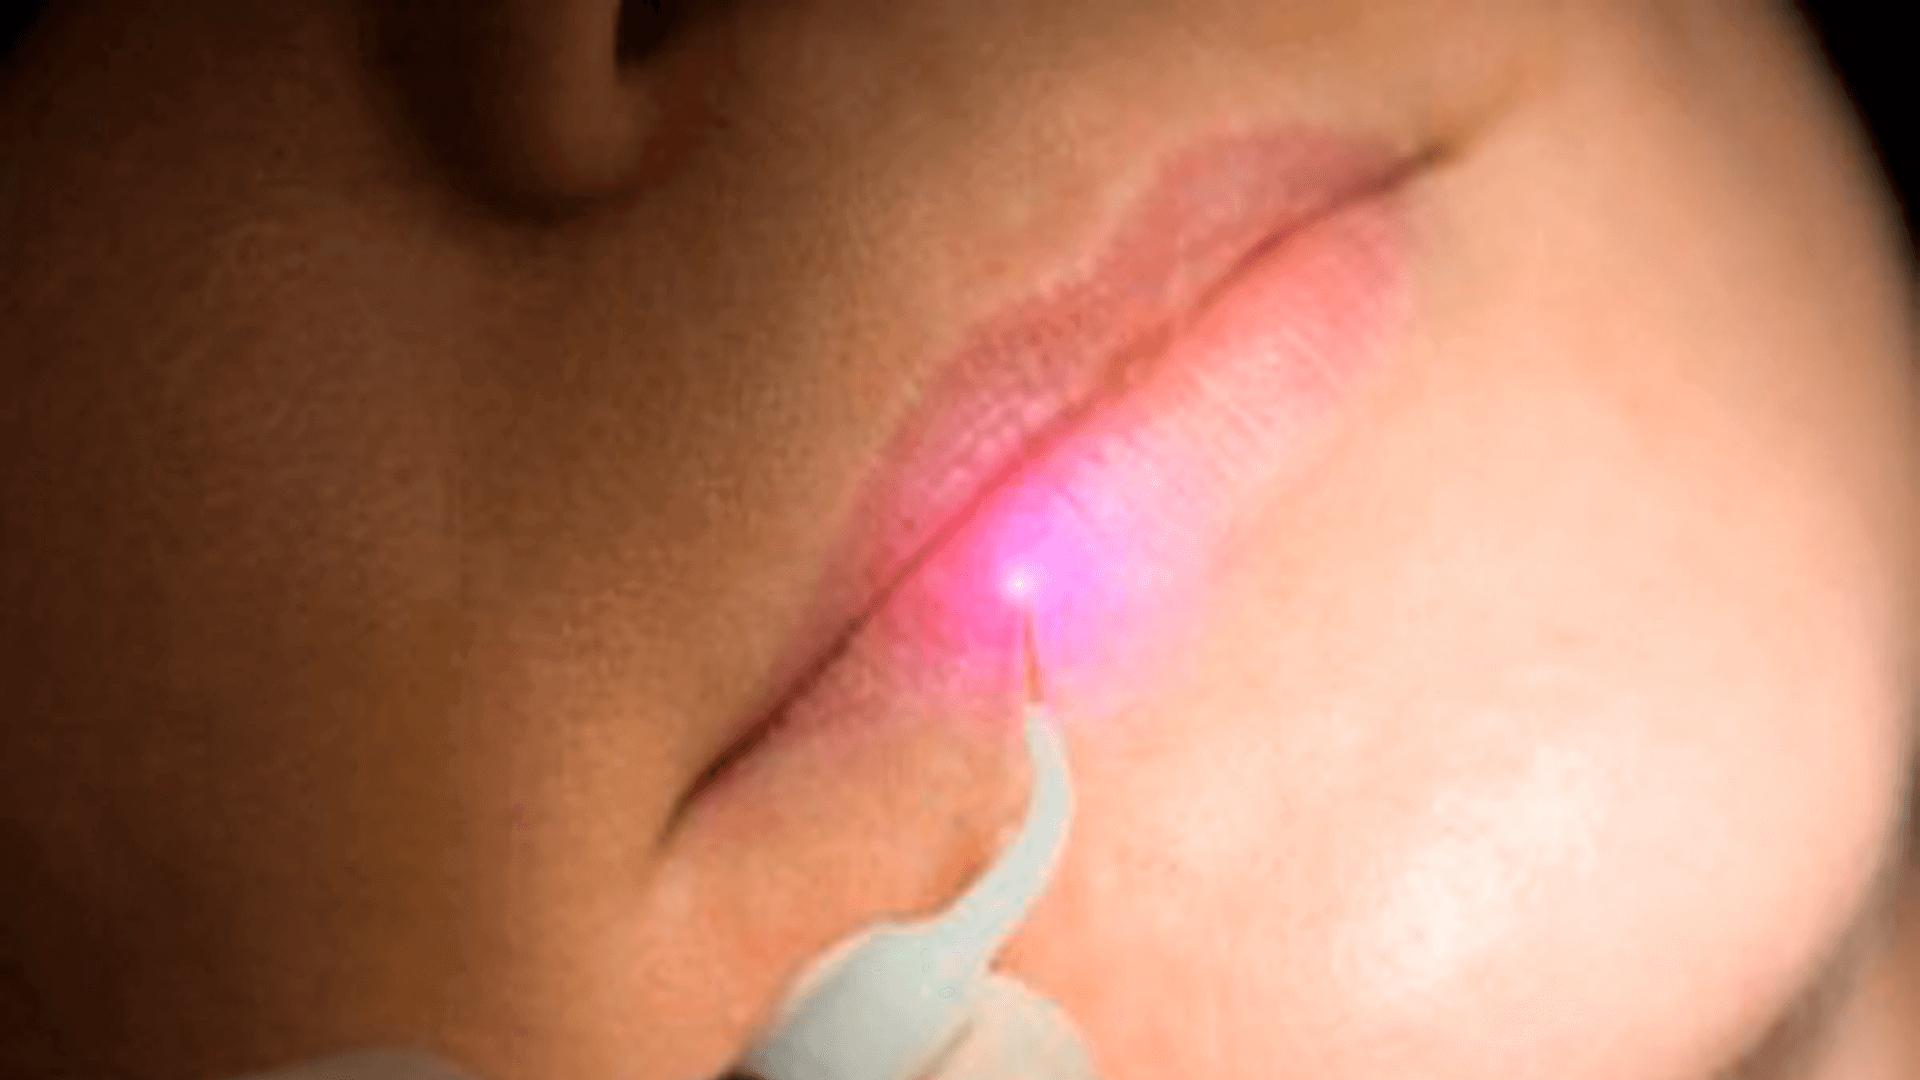 Dental laser for cold sores